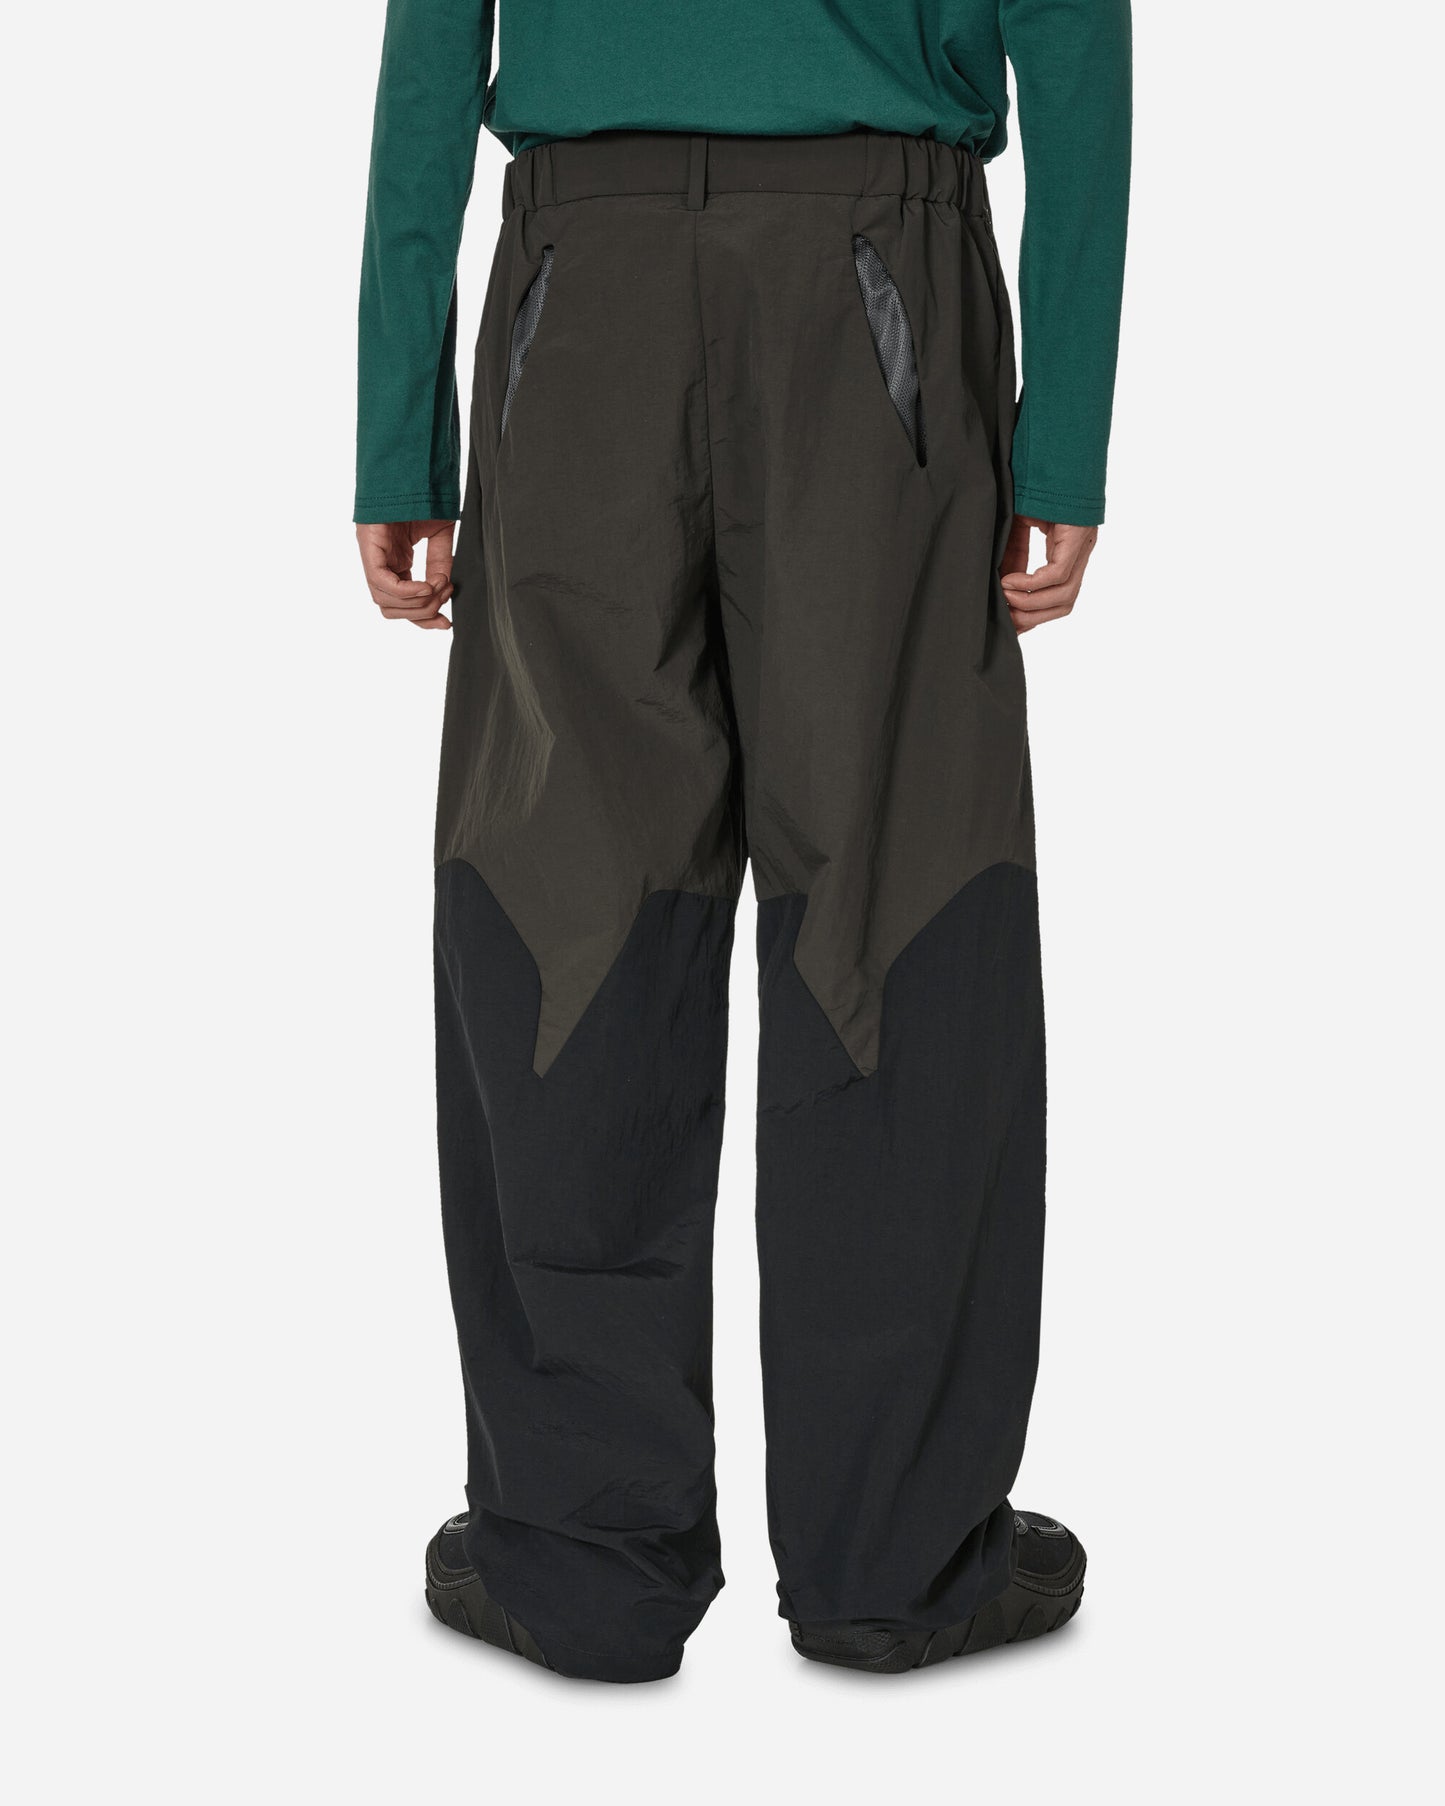 _J.L-A.L_ Aperture Trackpant Black Dark Green Pants Trousers JBMW042FA39 GRN0017